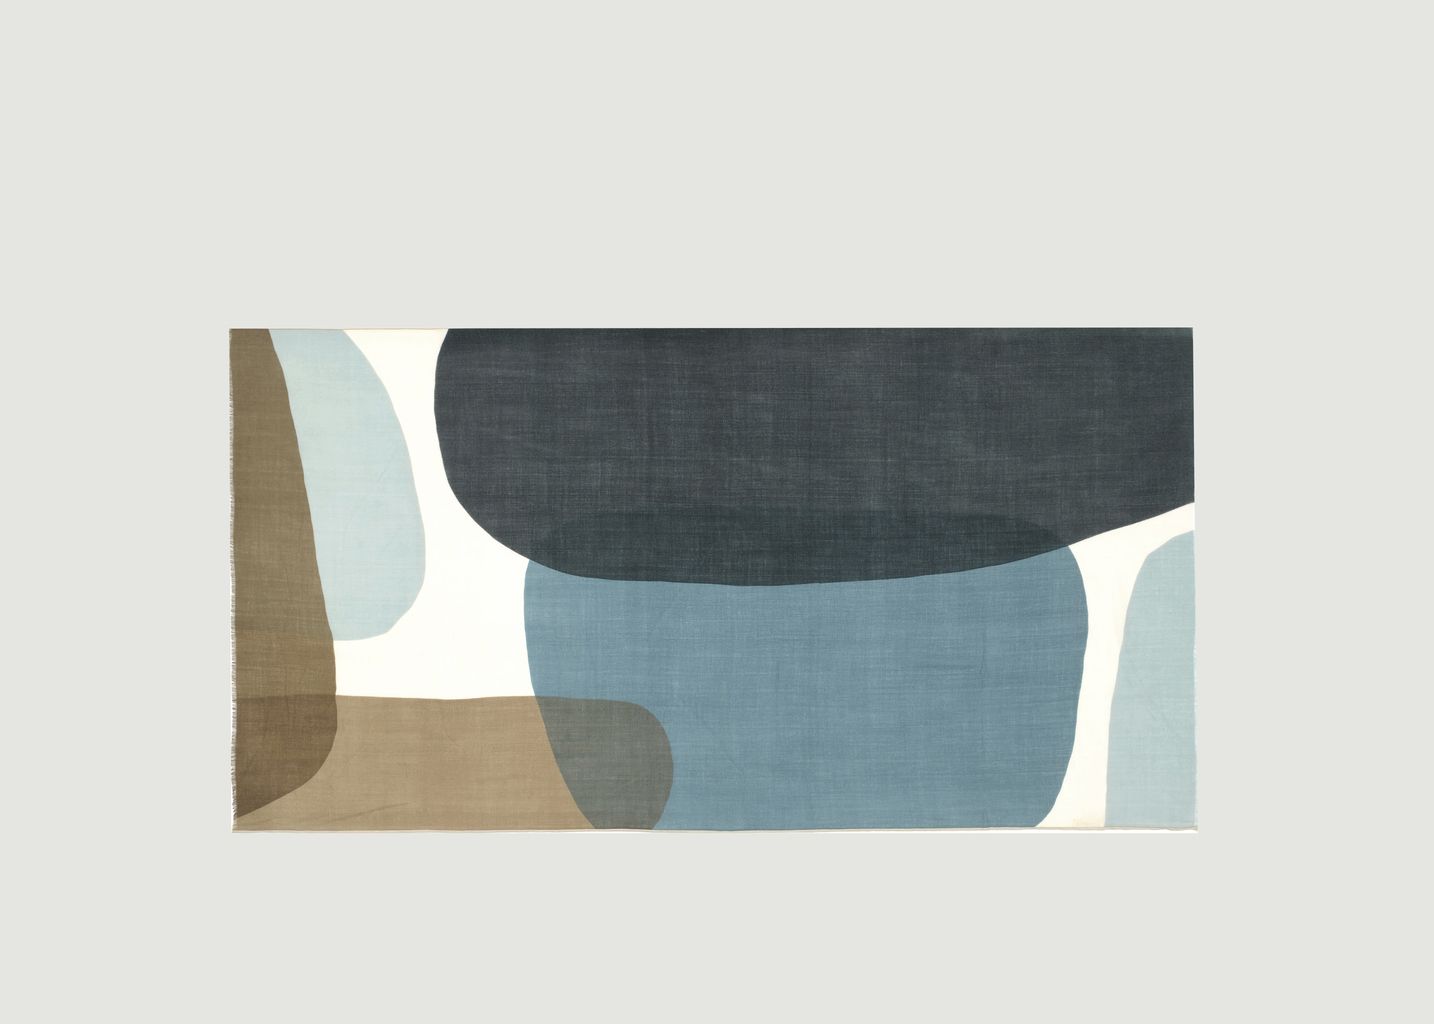 N°456 geometric pattern wool scarf - Moismont